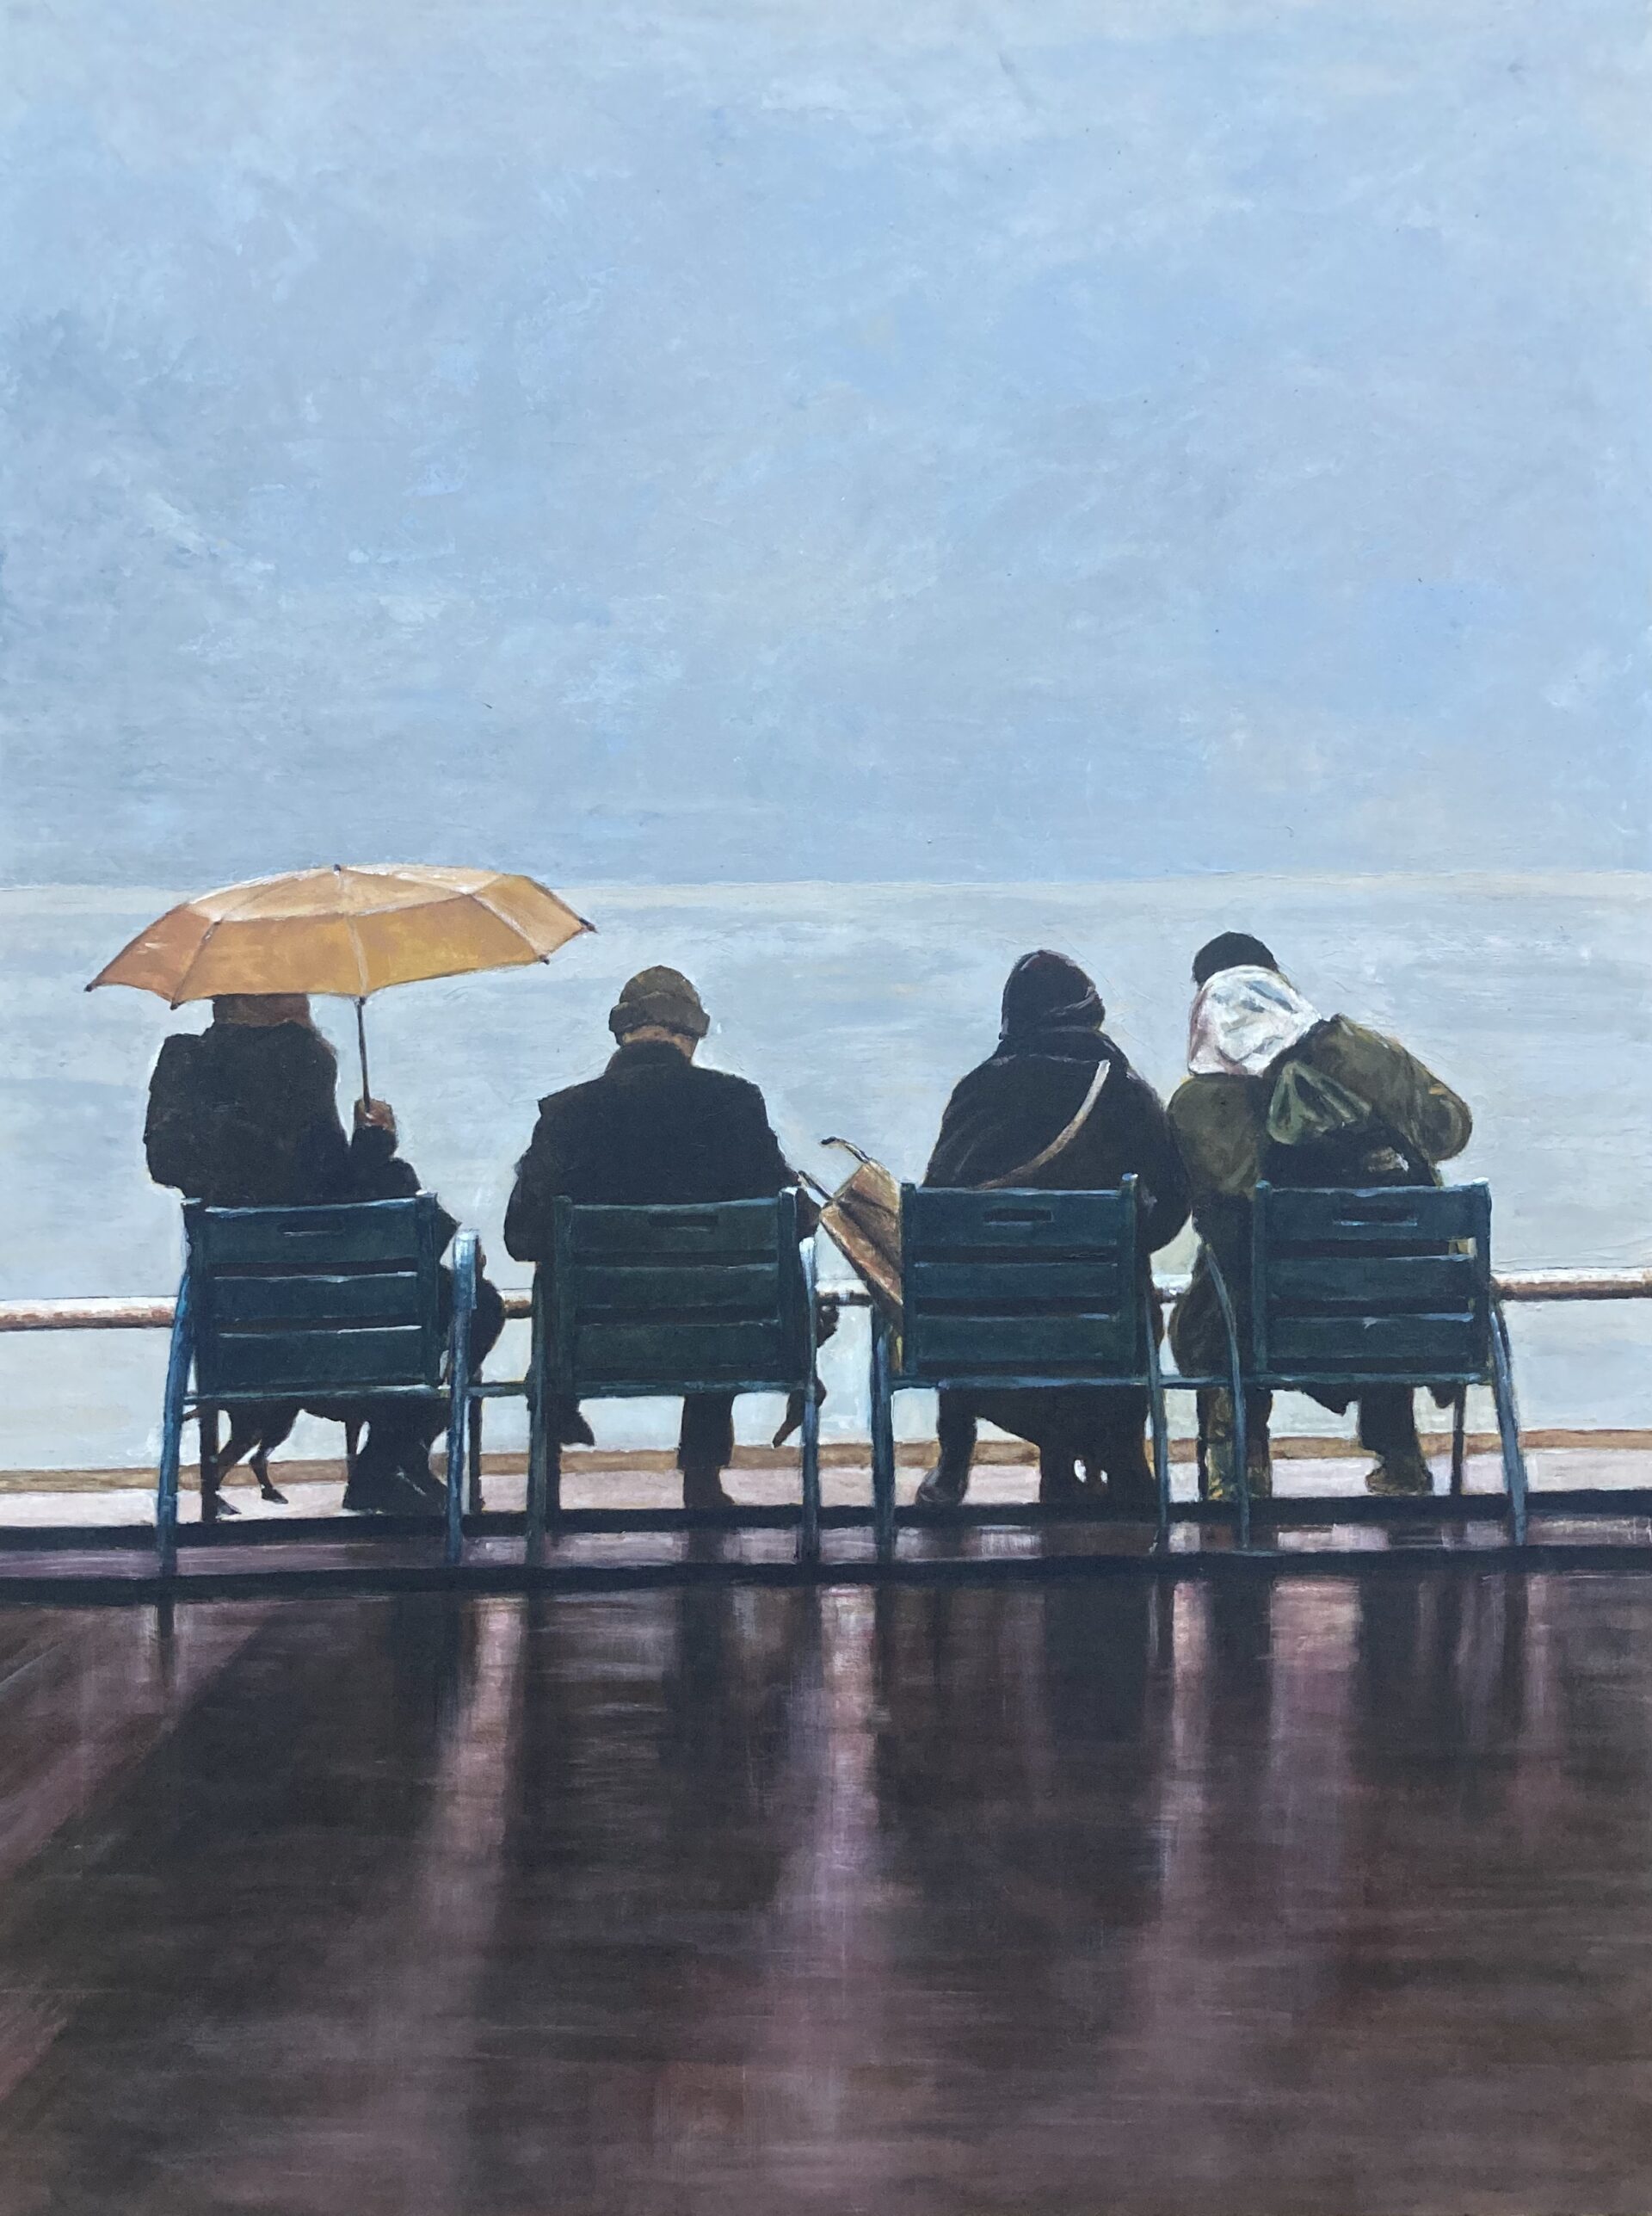 Opera d'arte pittorica che raffigura la promenad des anglais di Nizza con alcune persone sedute fronte mare sulle caratteristiche panchine